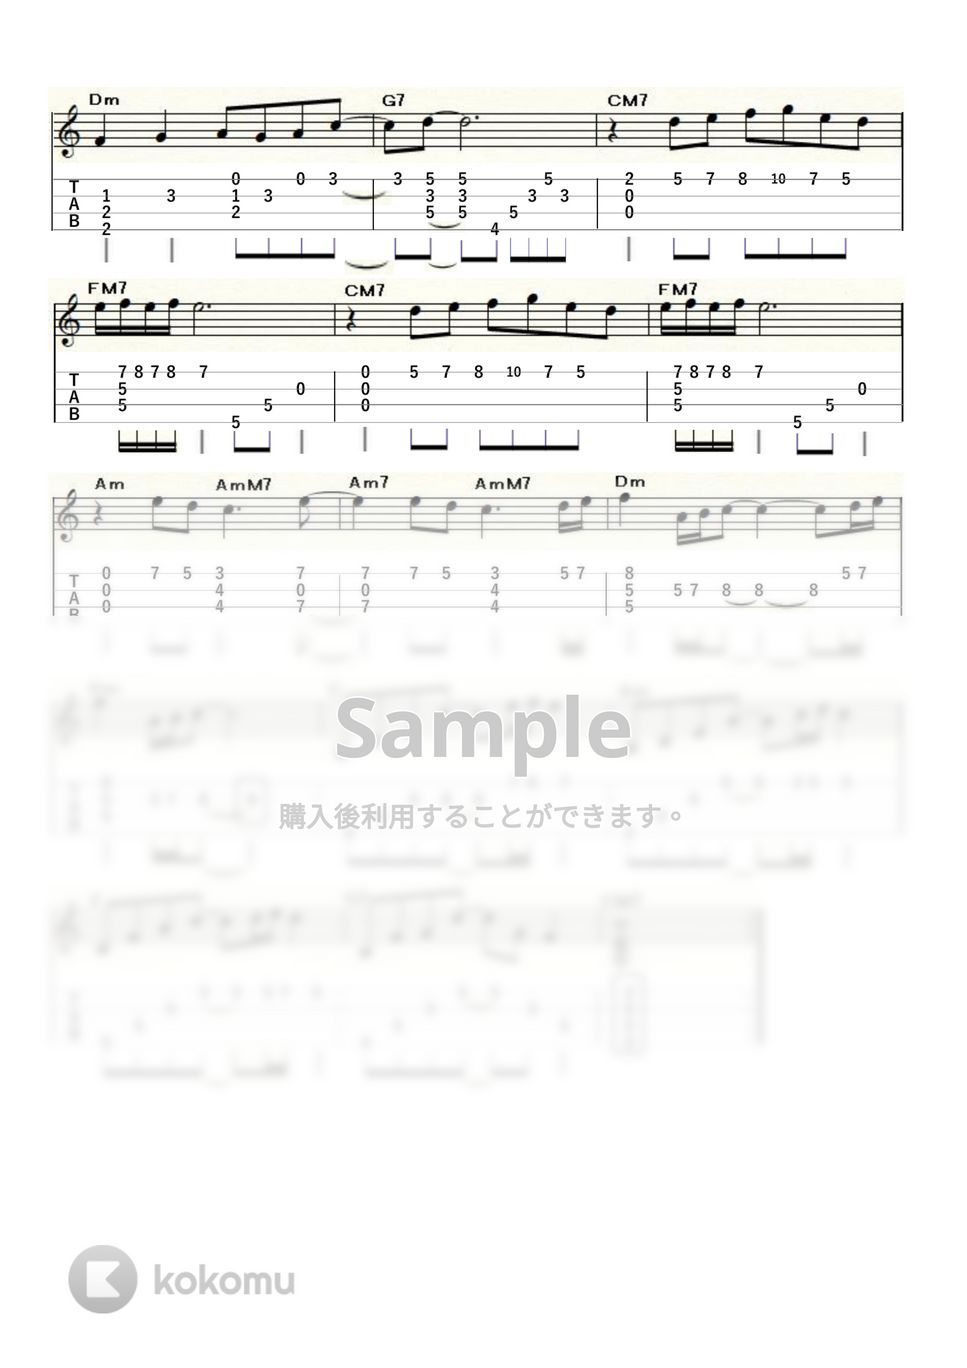 荒井由実 - 海を見ていた午後 (ｳｸﾚﾚｿﾛ / Low-G / 中級) by ukulelepapa